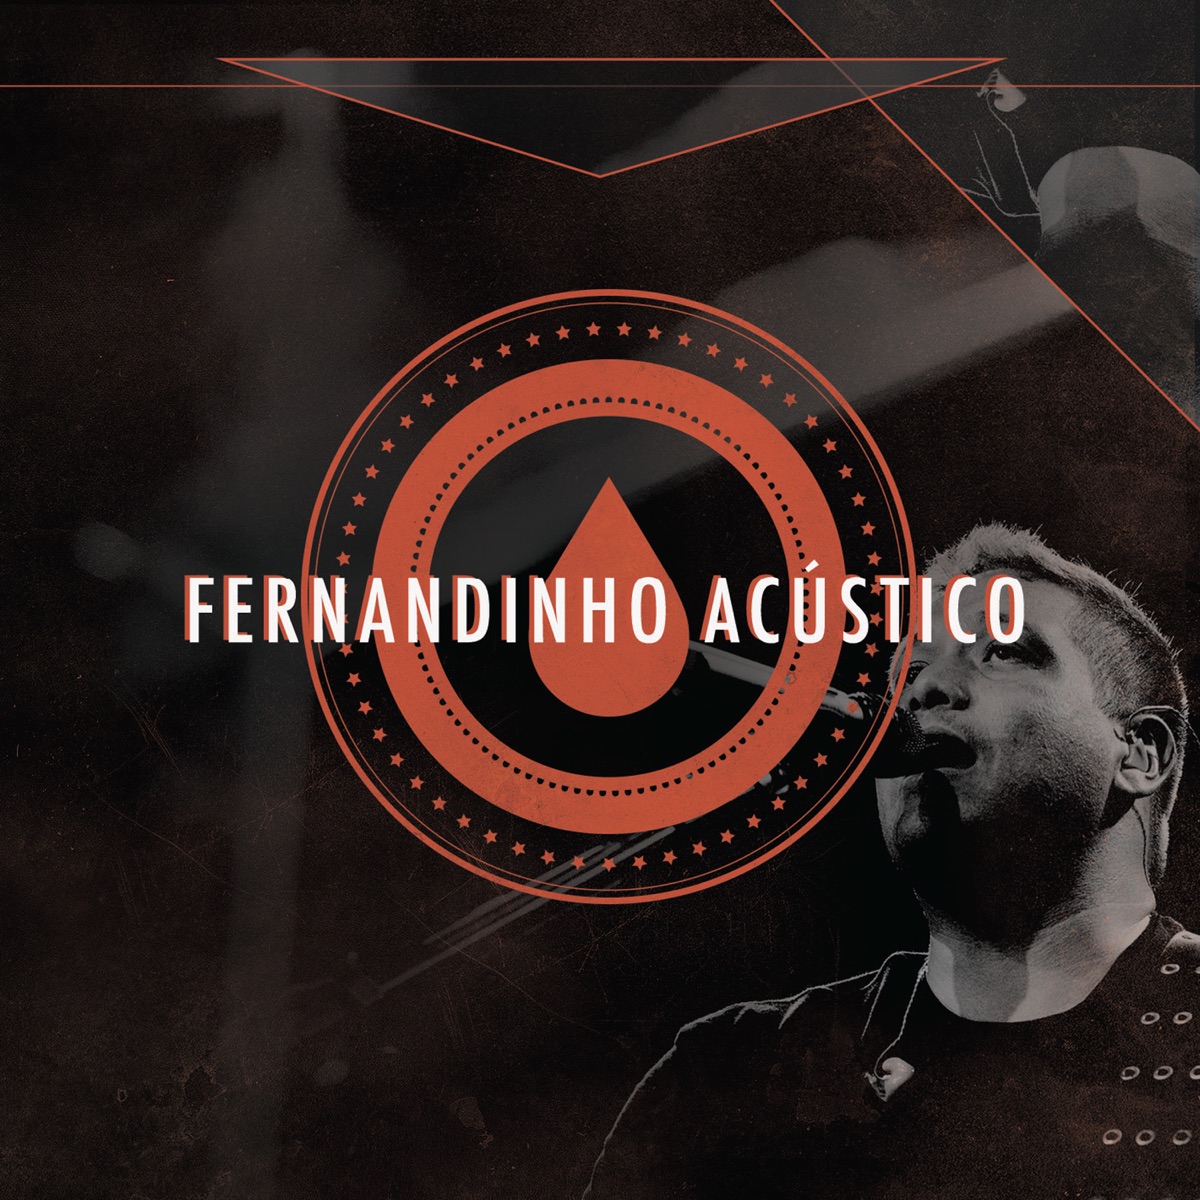 Fernandinho - Eis Que Estou a Porta (Live) - Ouvir Música